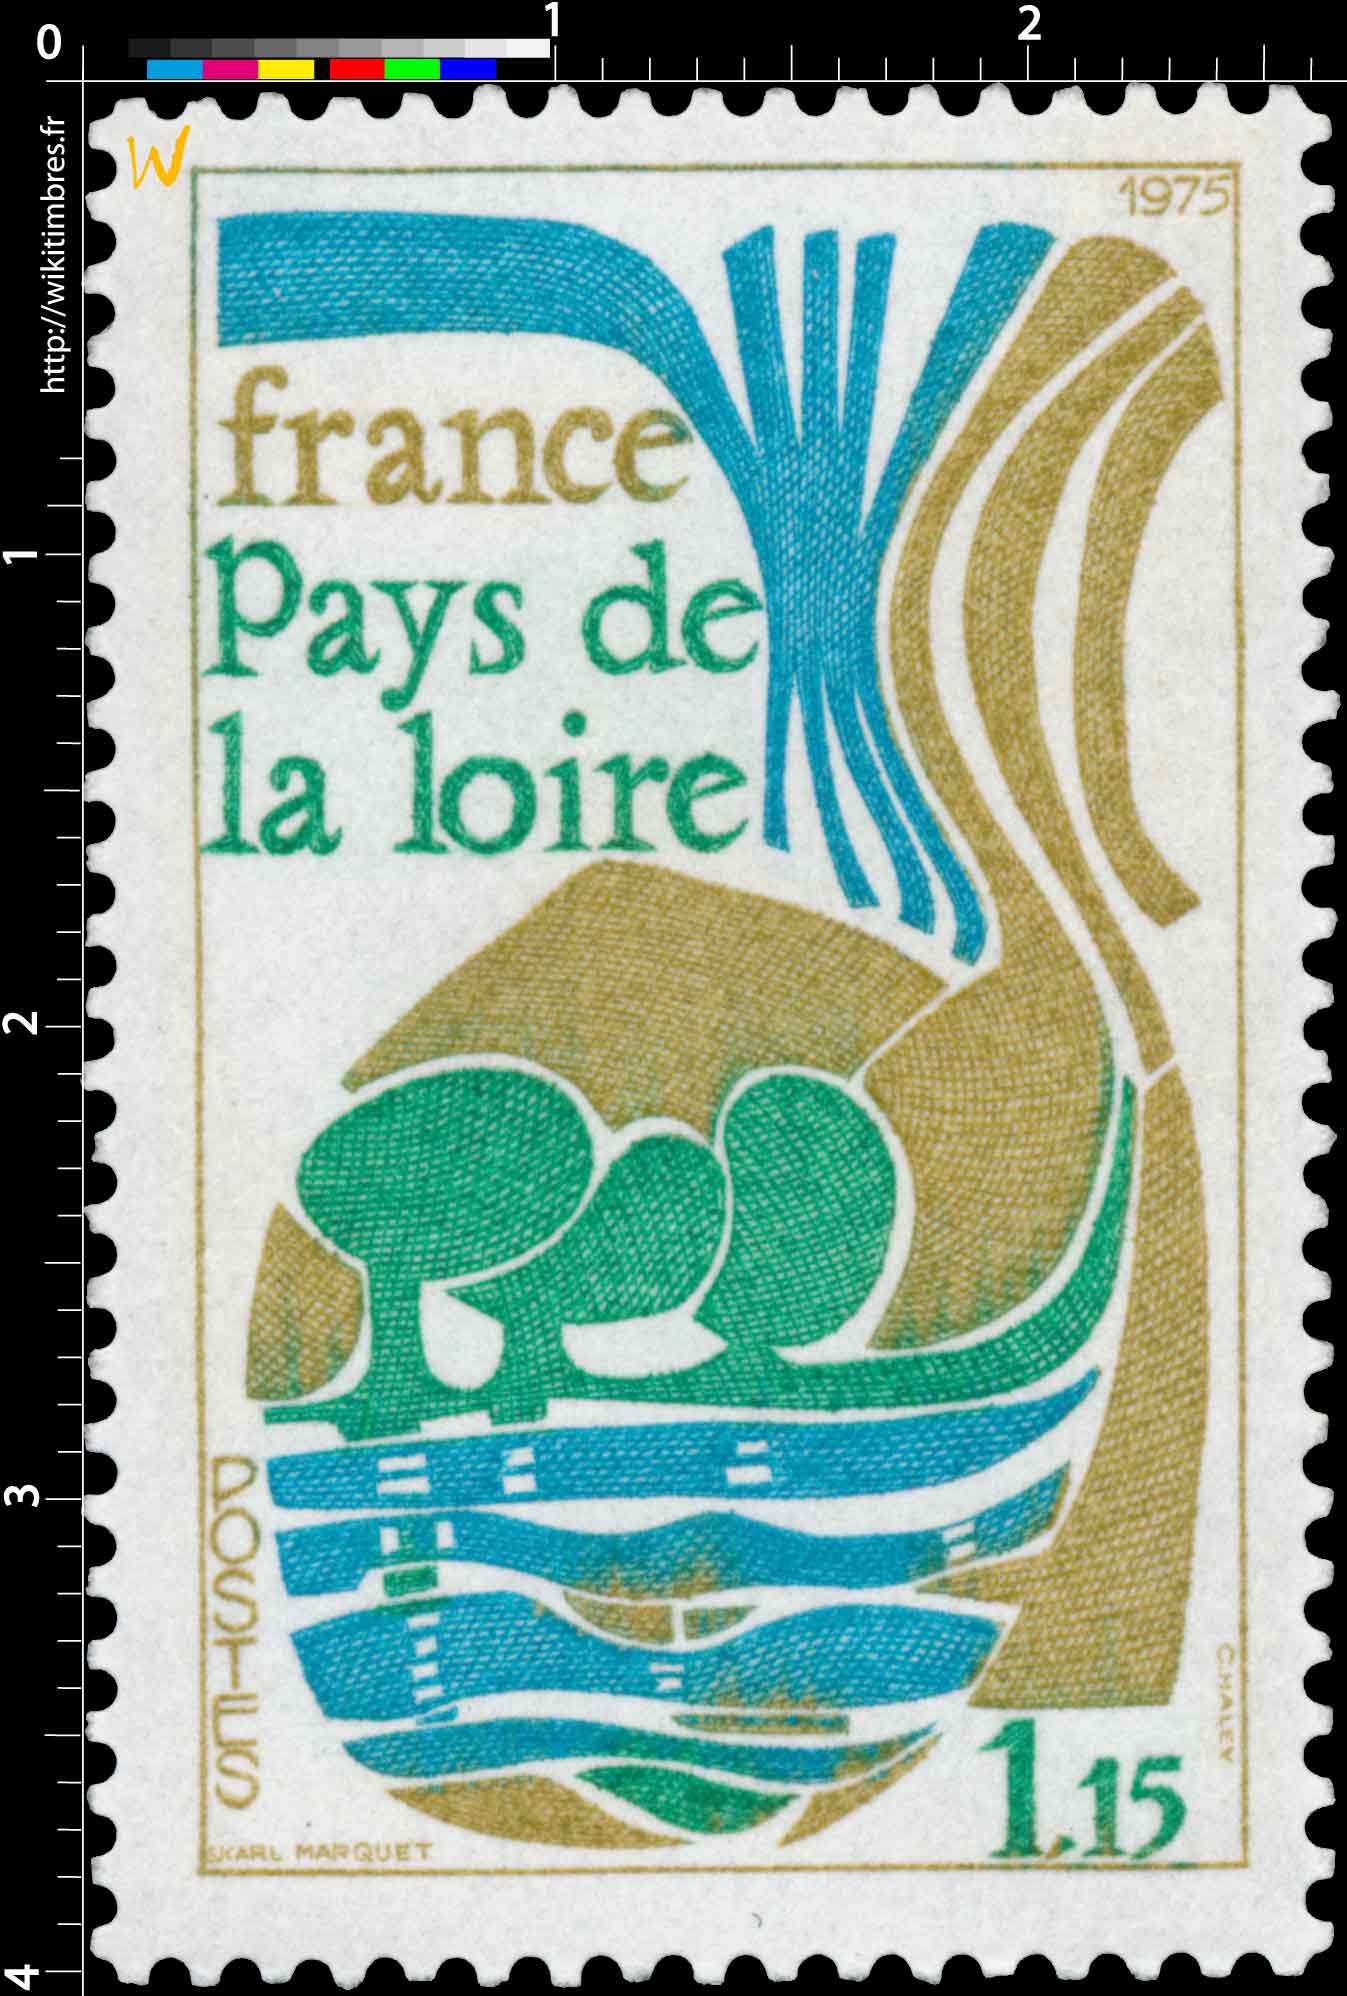 1975 Pays de la Loire